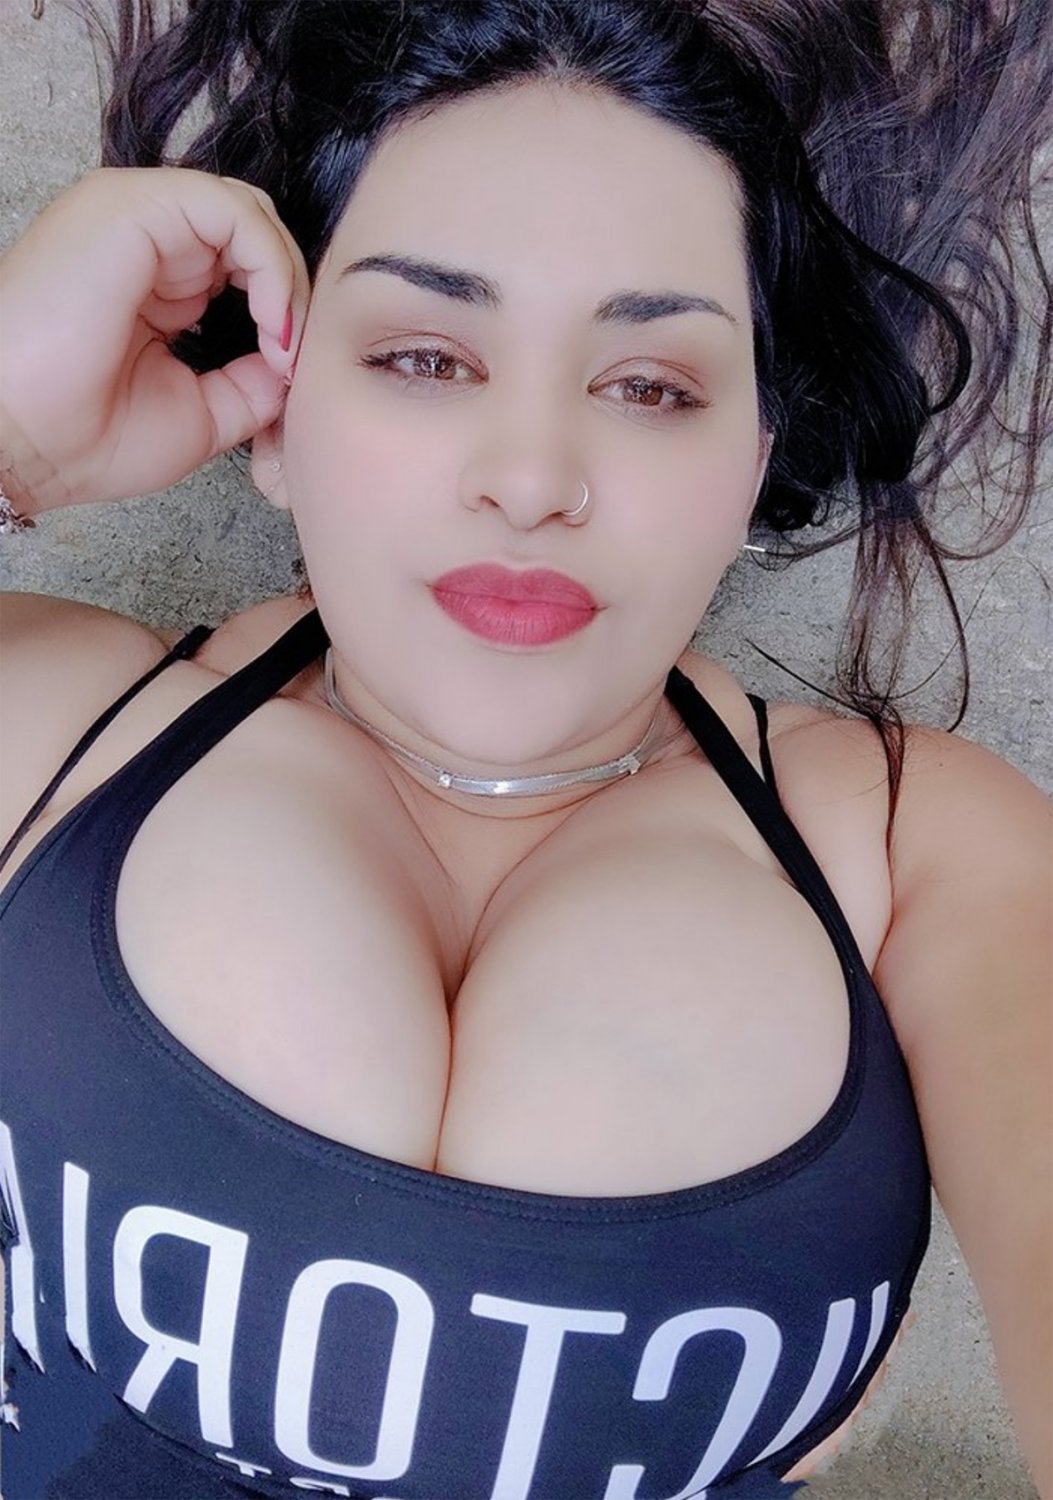 Hot Busty Latina Babe - Porn Videos and Photos